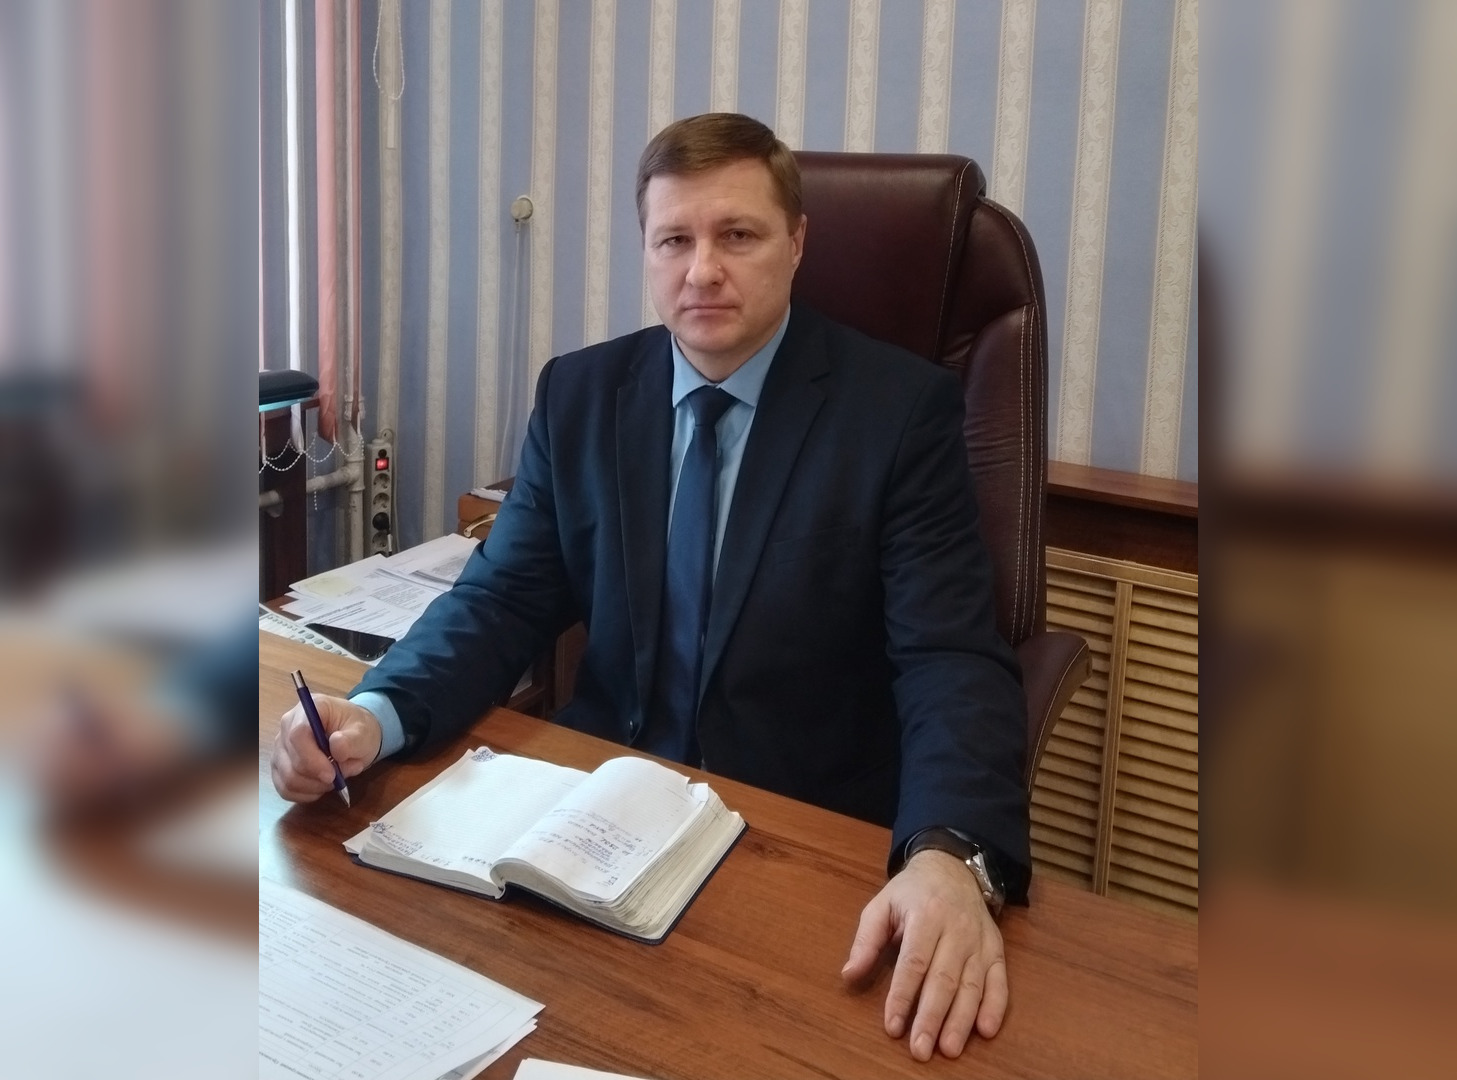 Лопнуло терпение: глава Орловского района со скандалом покинул пост